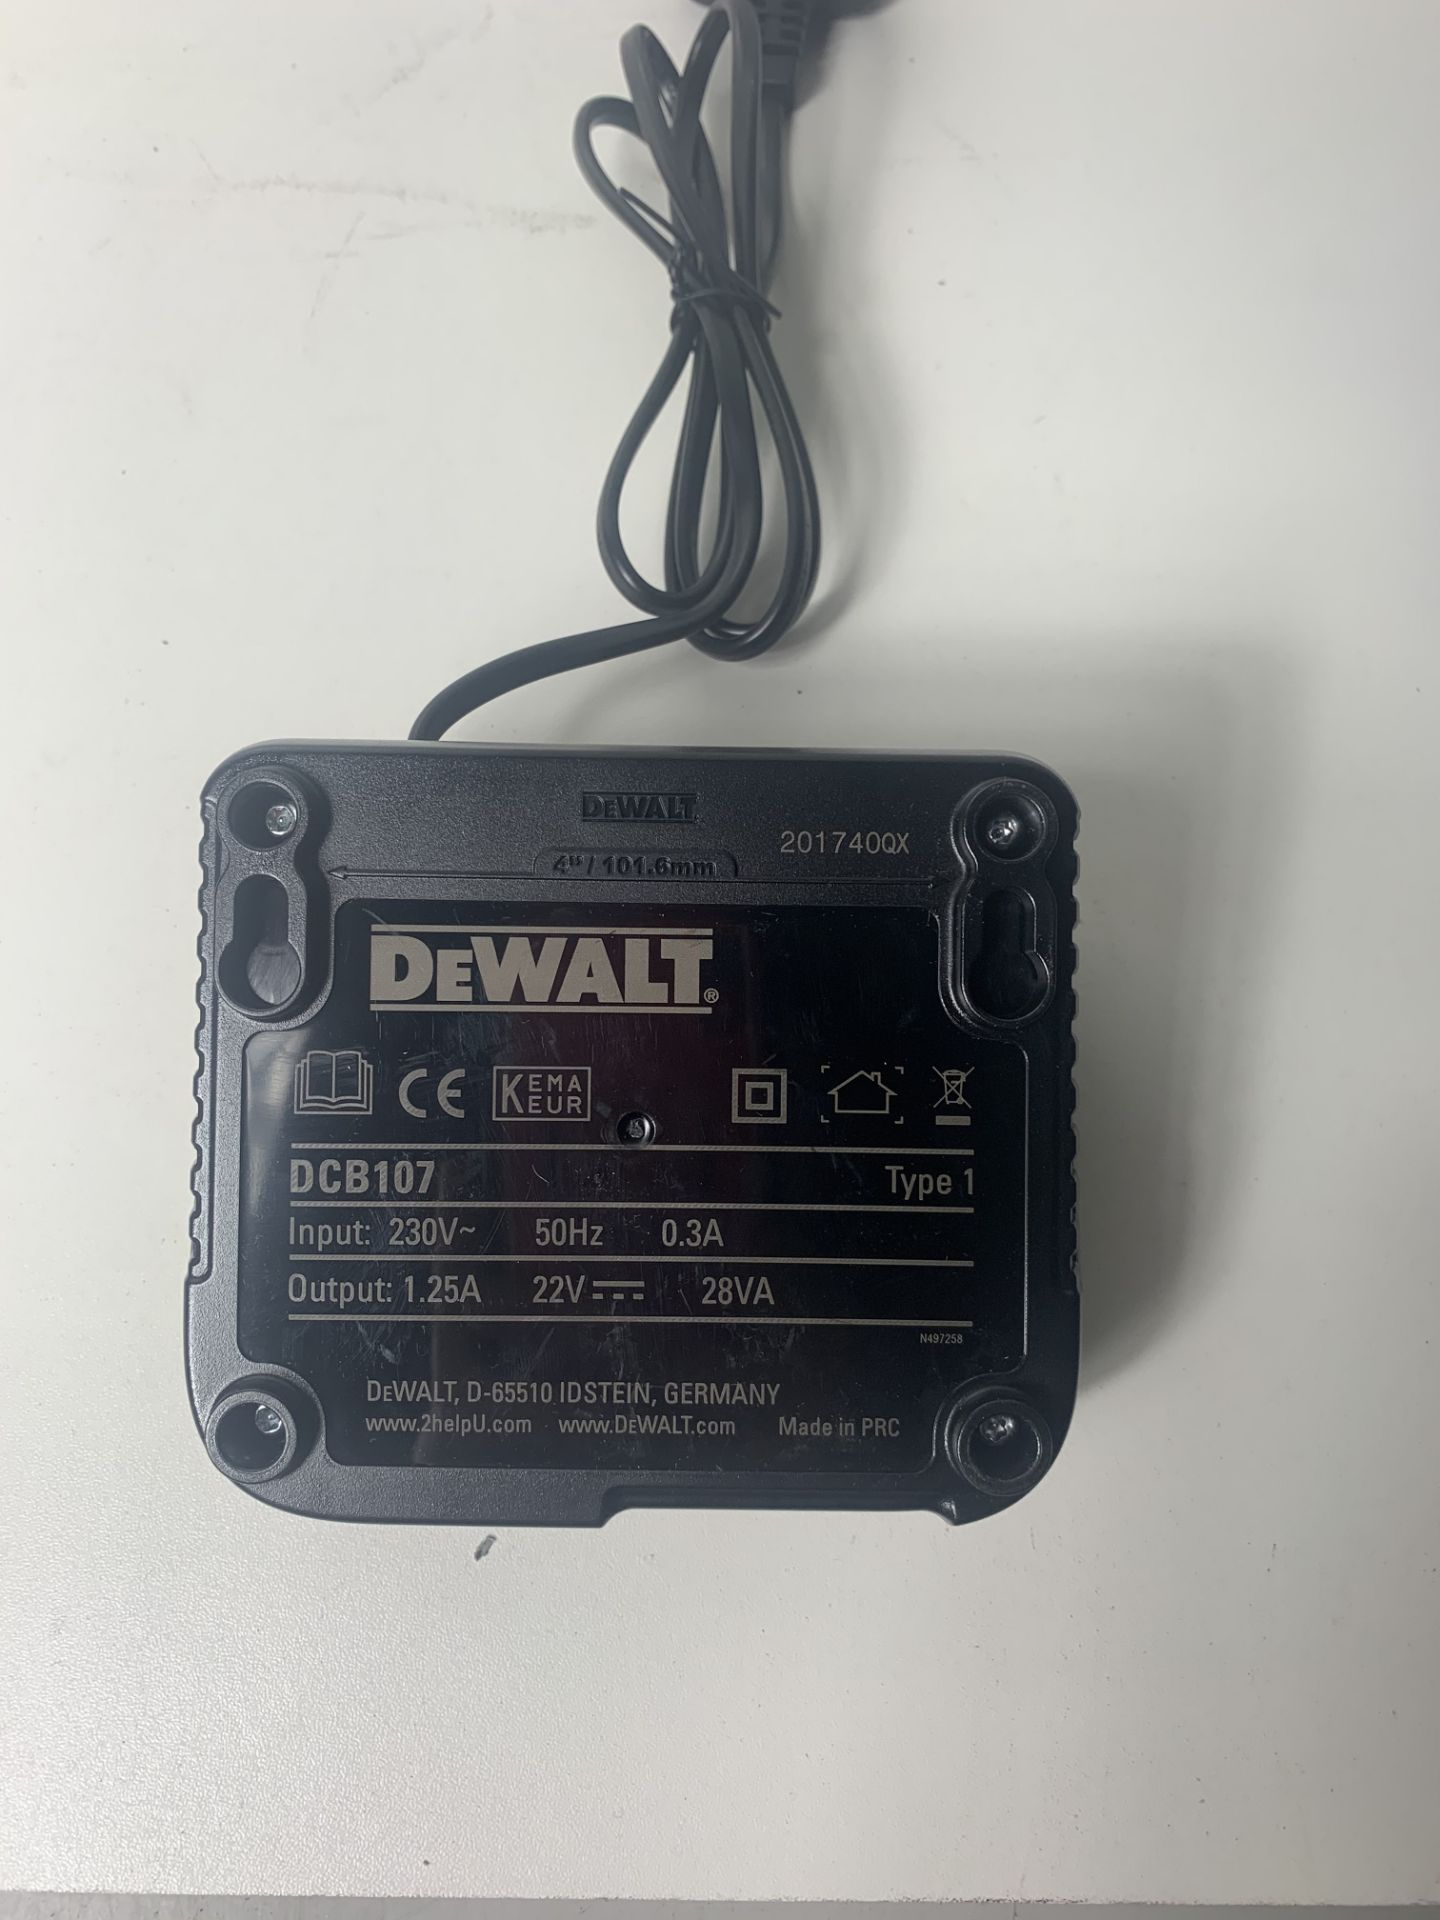 3 x Dewalt DCB107 10.8V/14.4V/18V XR LI-ION Battery Chargers - Image 4 of 4